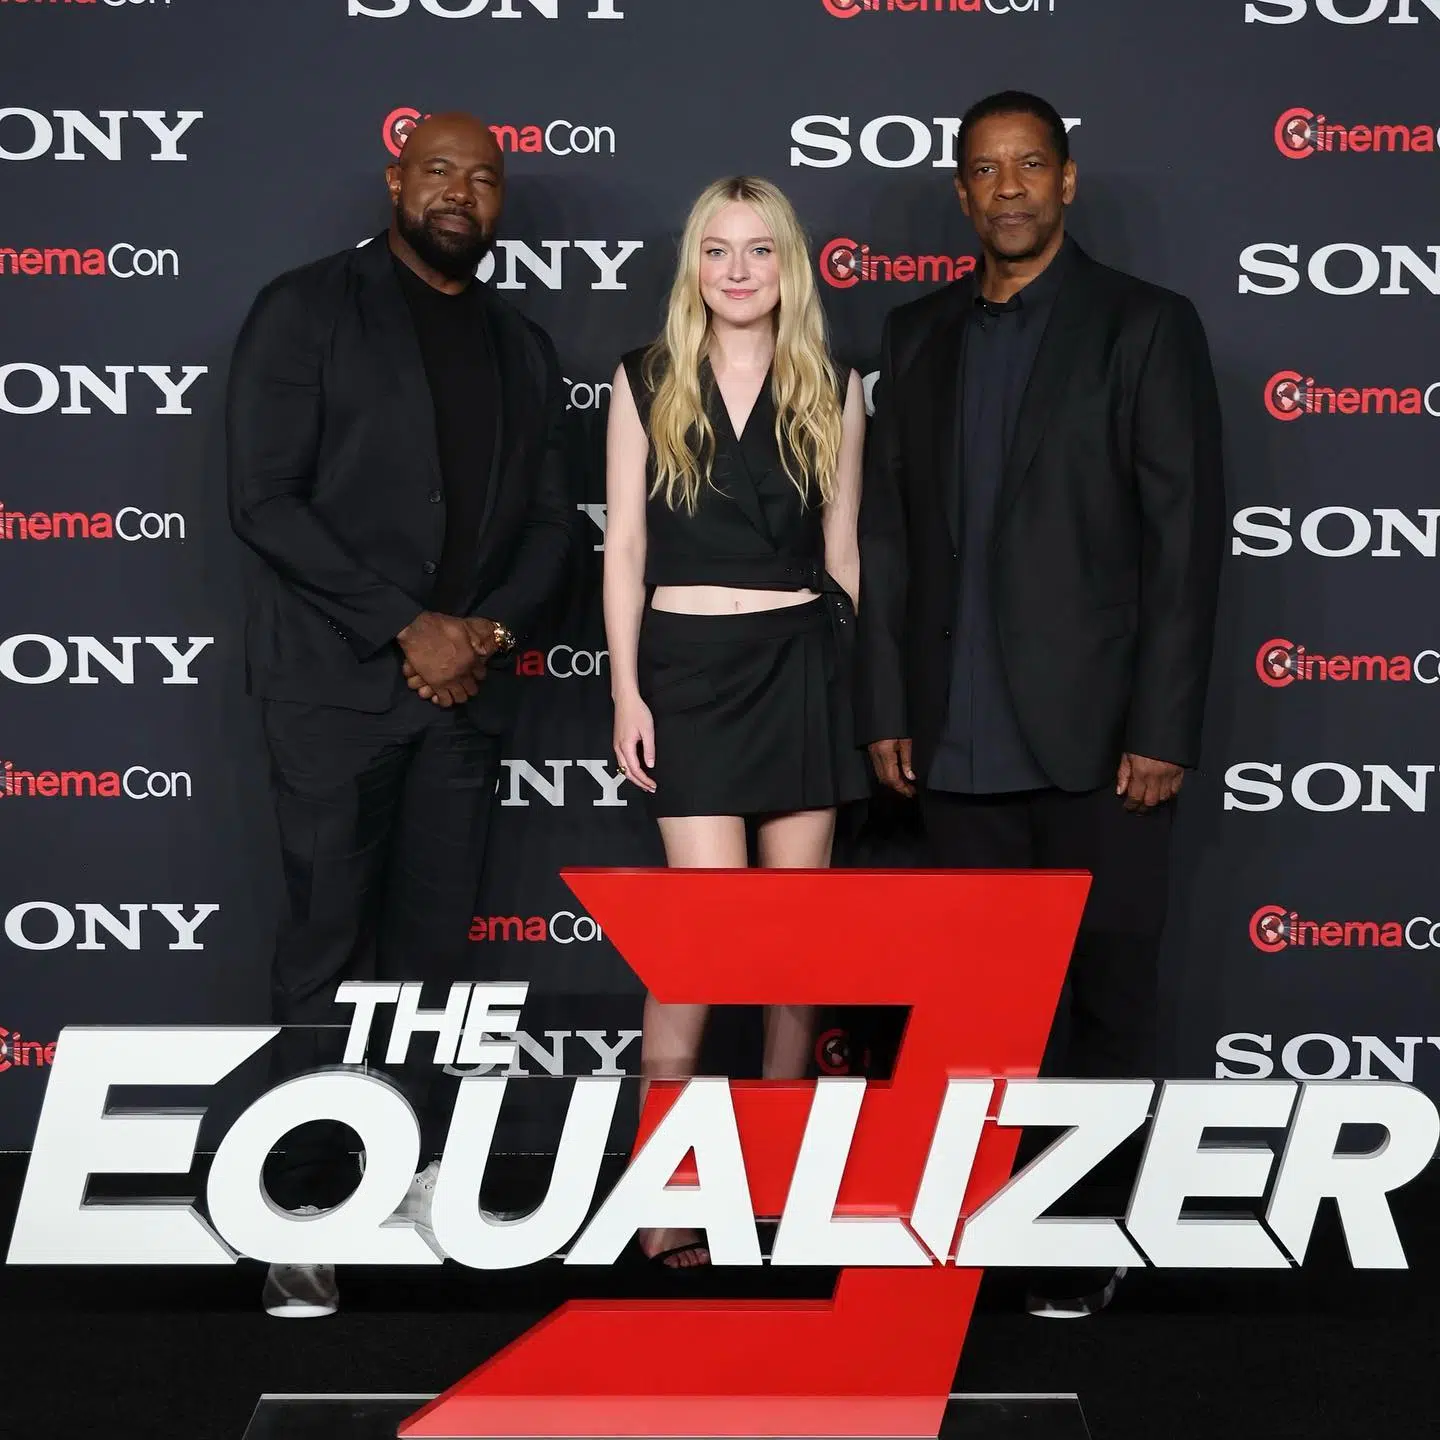 The Equalizer 2' trailer: Denzel Washington is back as Robert